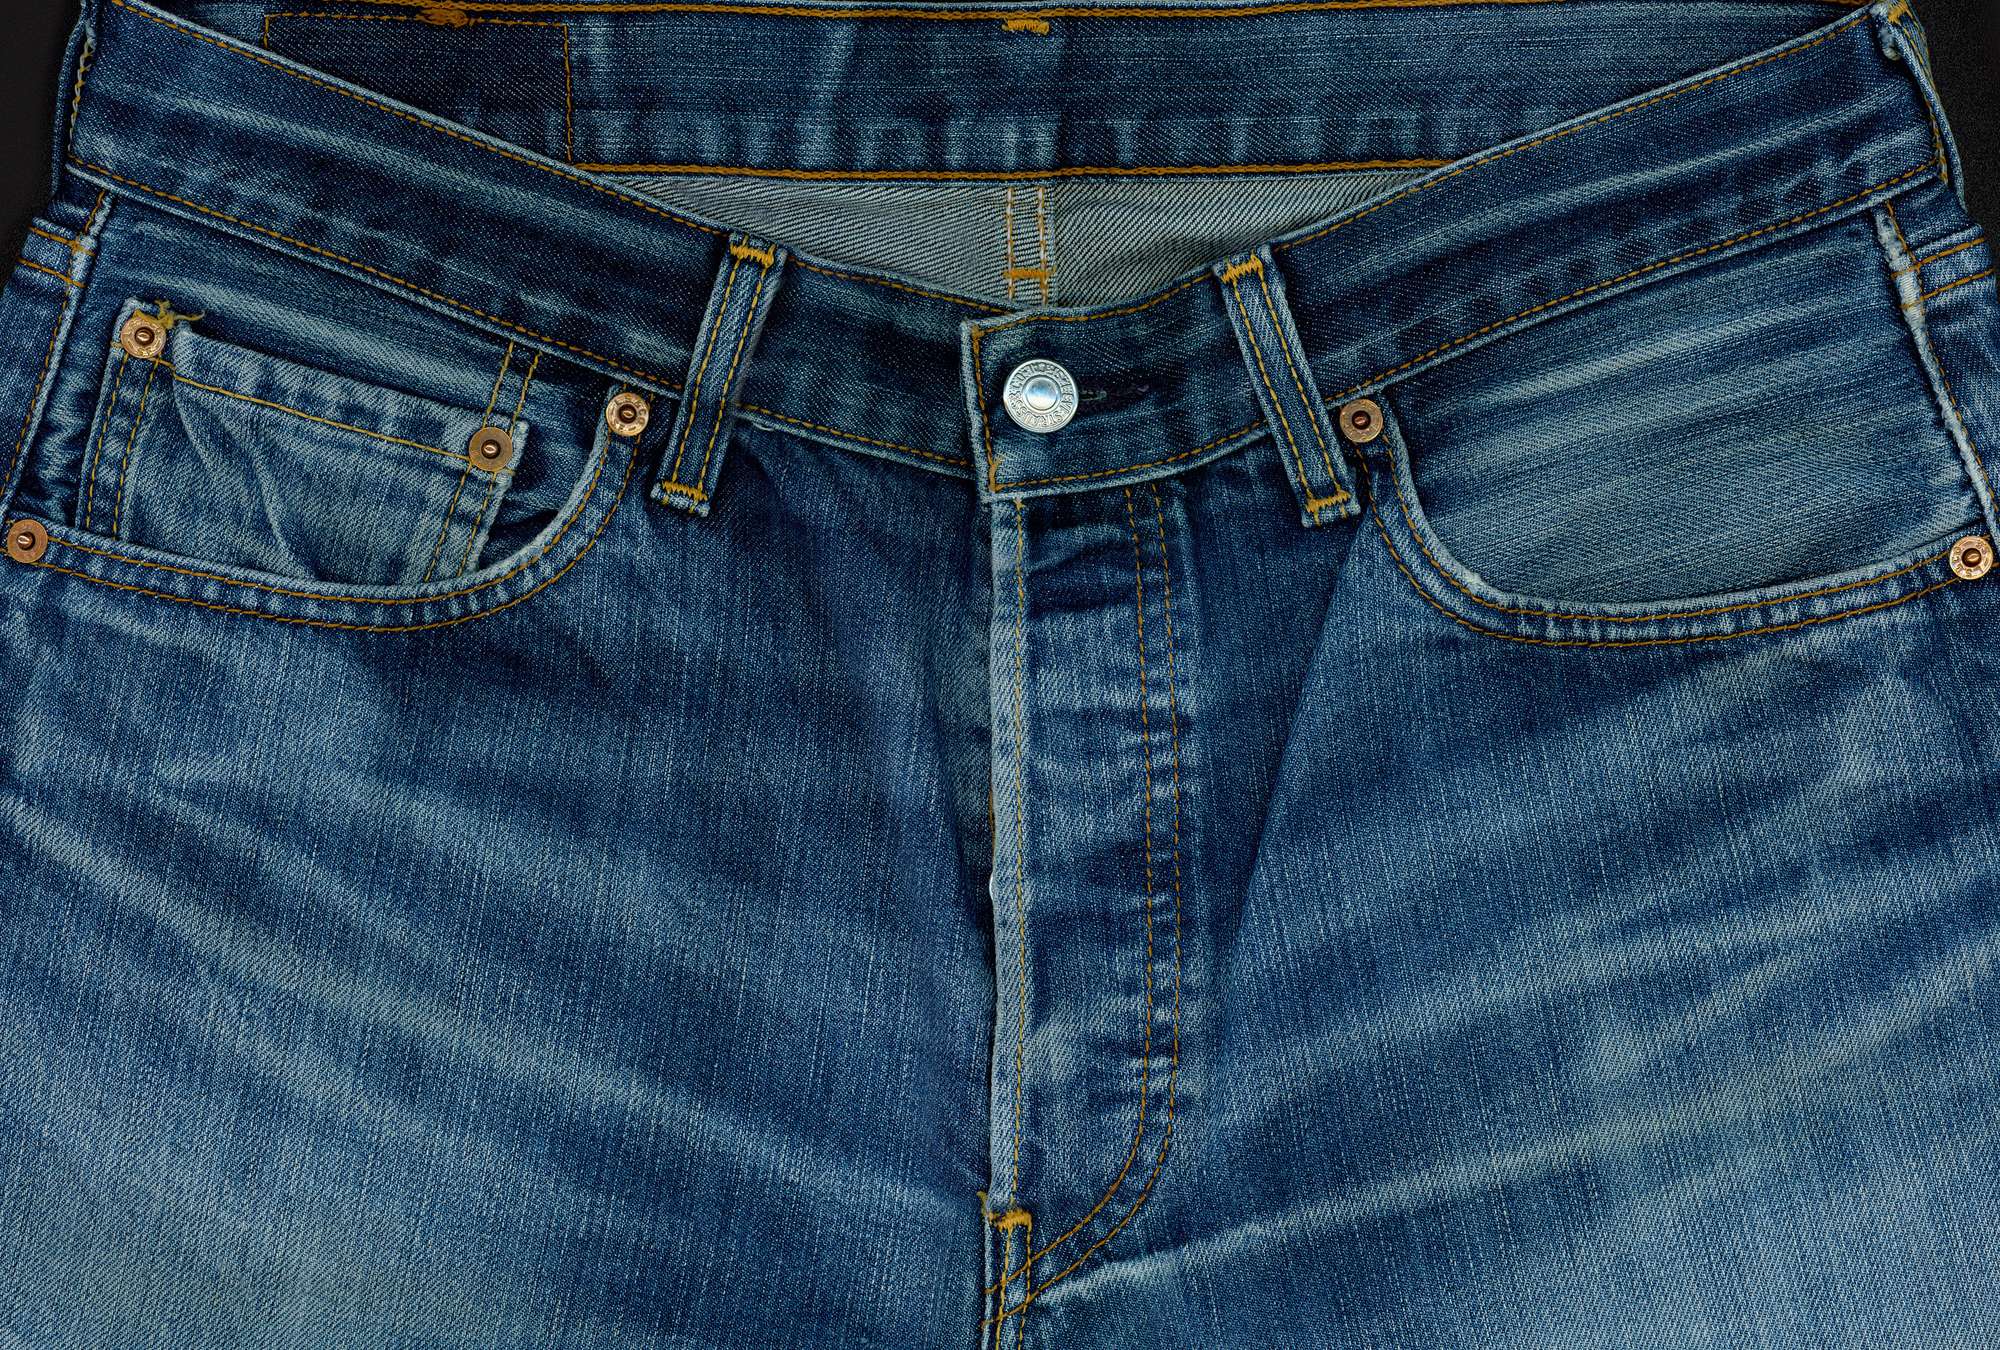             Jeans blue - photo wallpaper Blue Jeans in XXL format
        